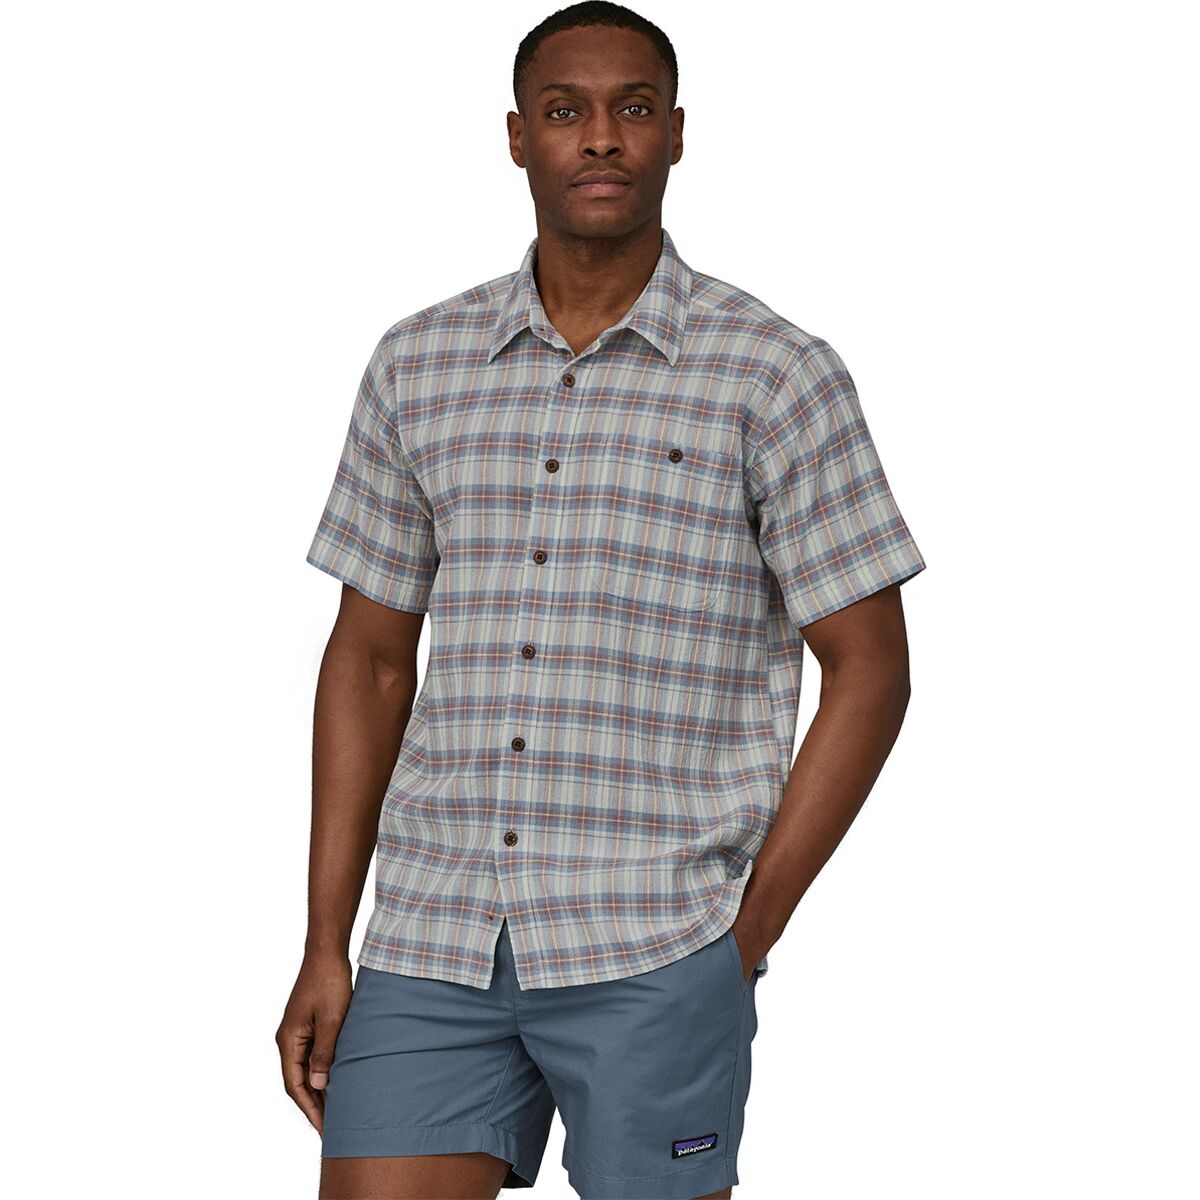 A/C Short-Sleeve Shirt - Men